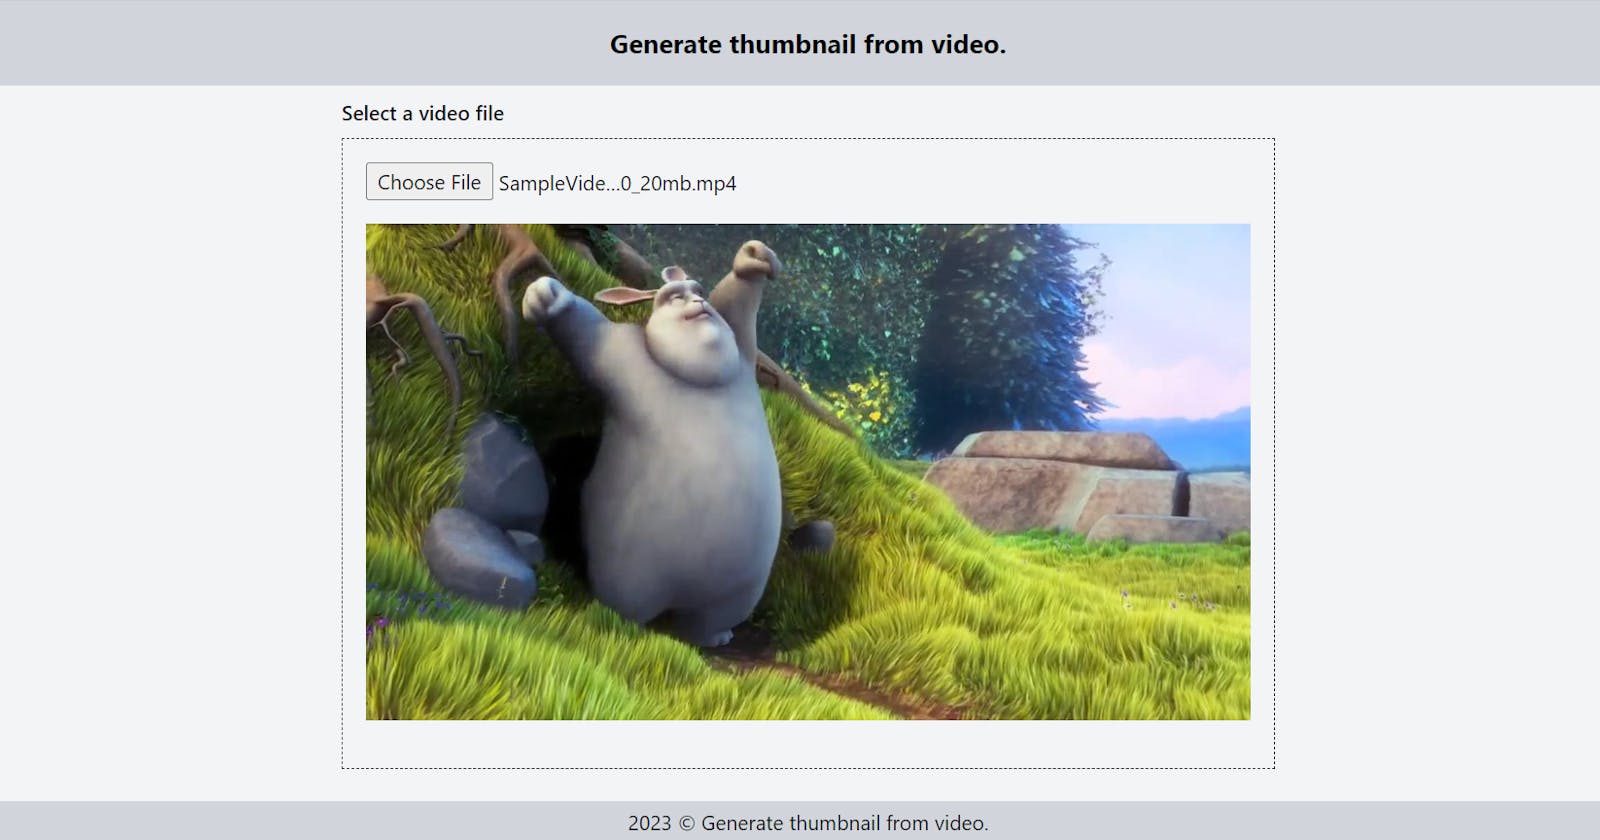 Generate thumbnail from video using react custom hook